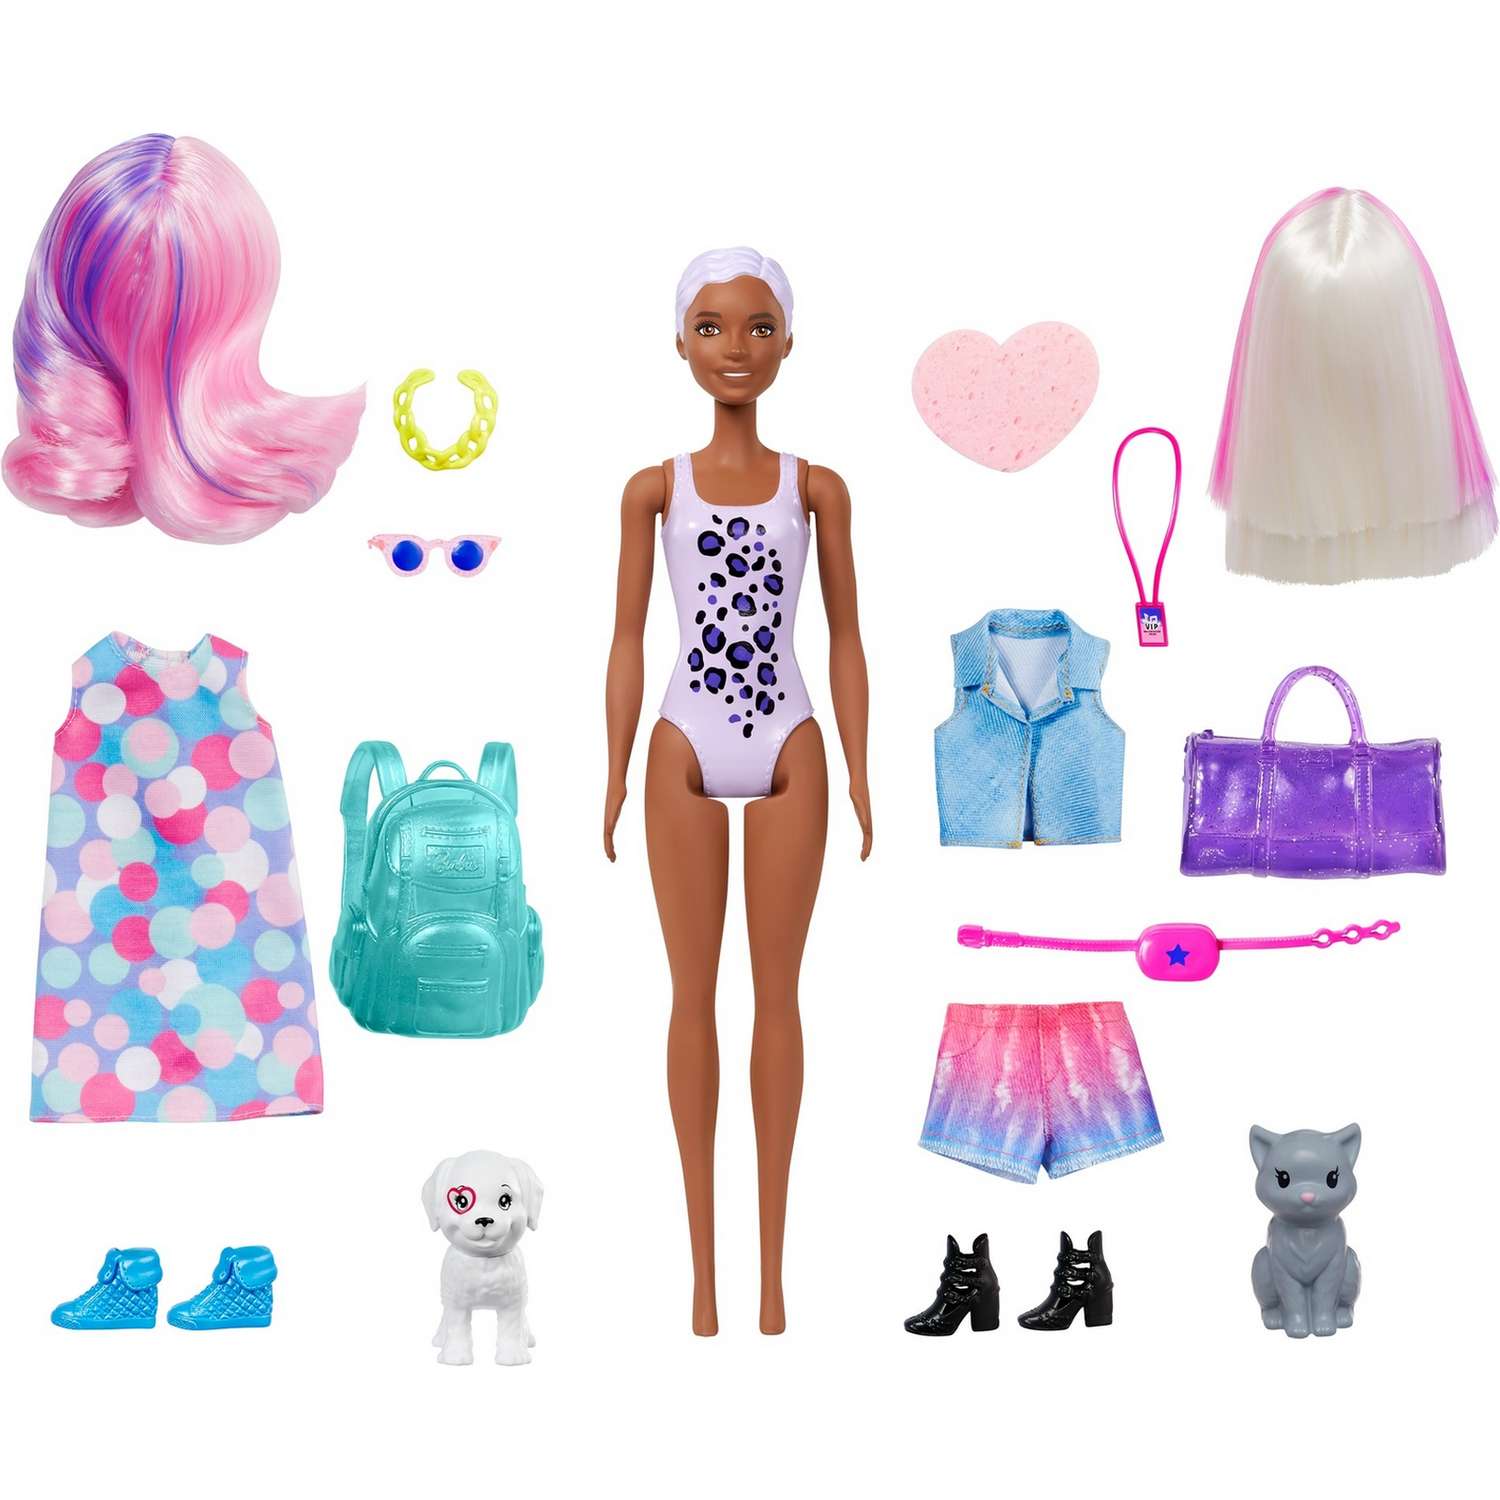 Кукла Barbie Карнавал и концерт в непрозрачной упаковке (сюрприз) GPD57 GPD54 - фото 2